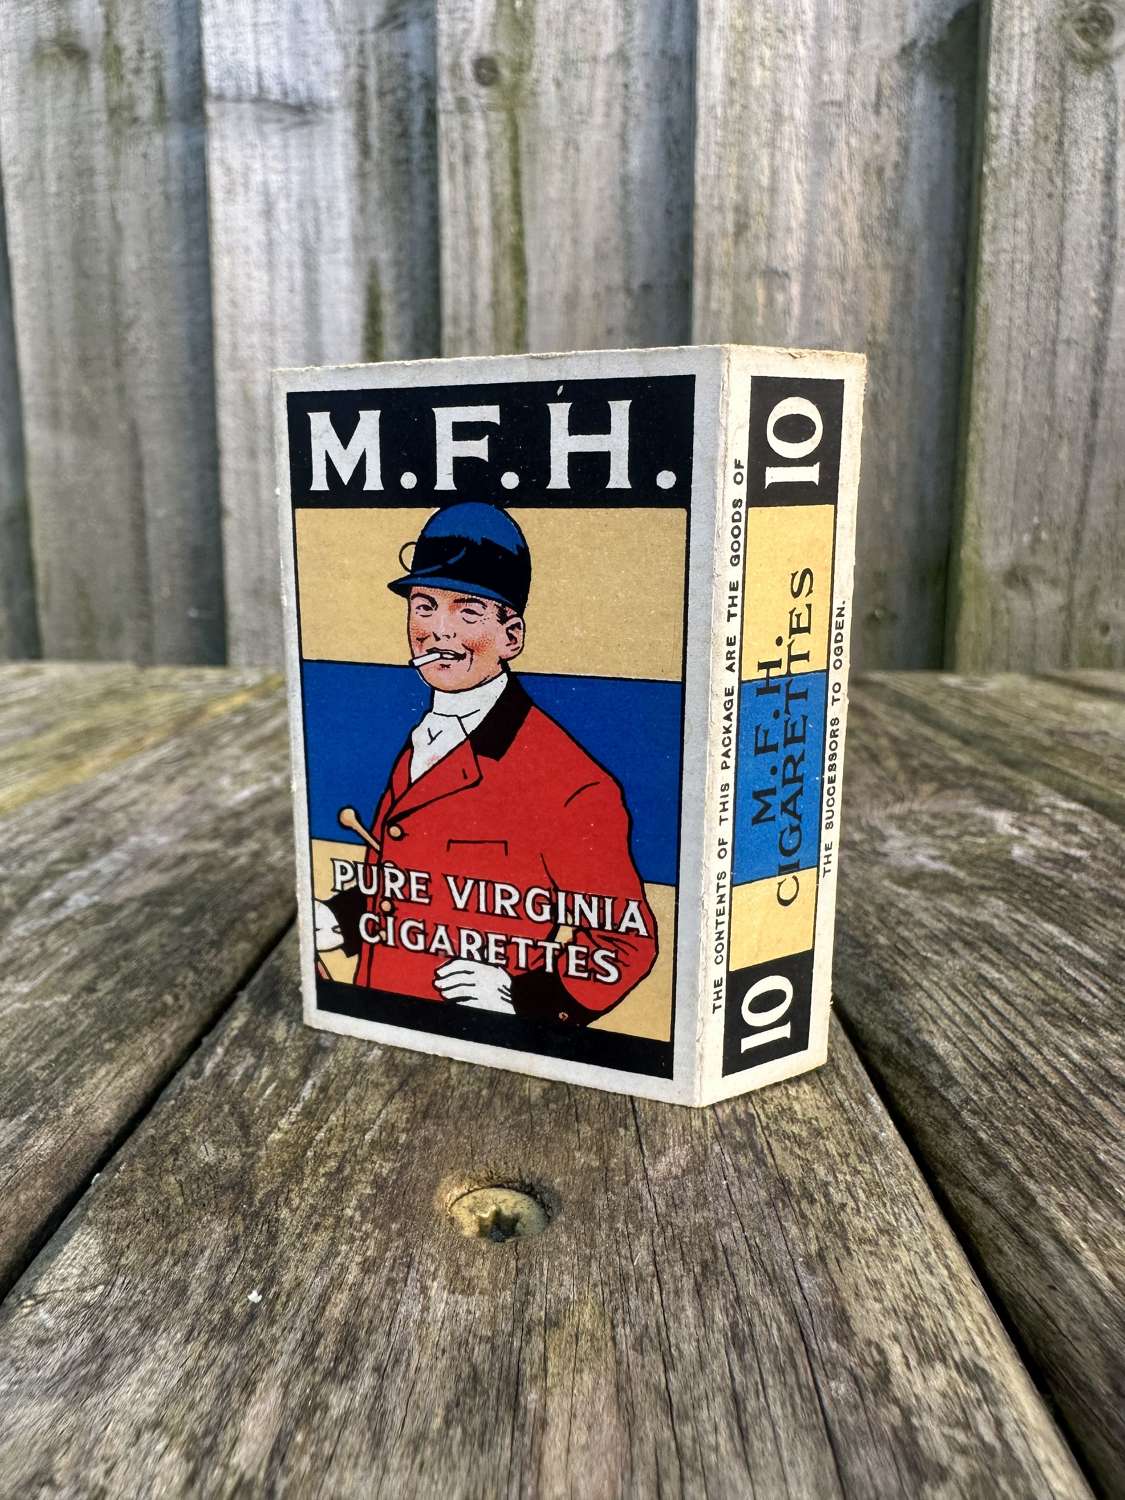 M.F.H ogdens cigarette packet